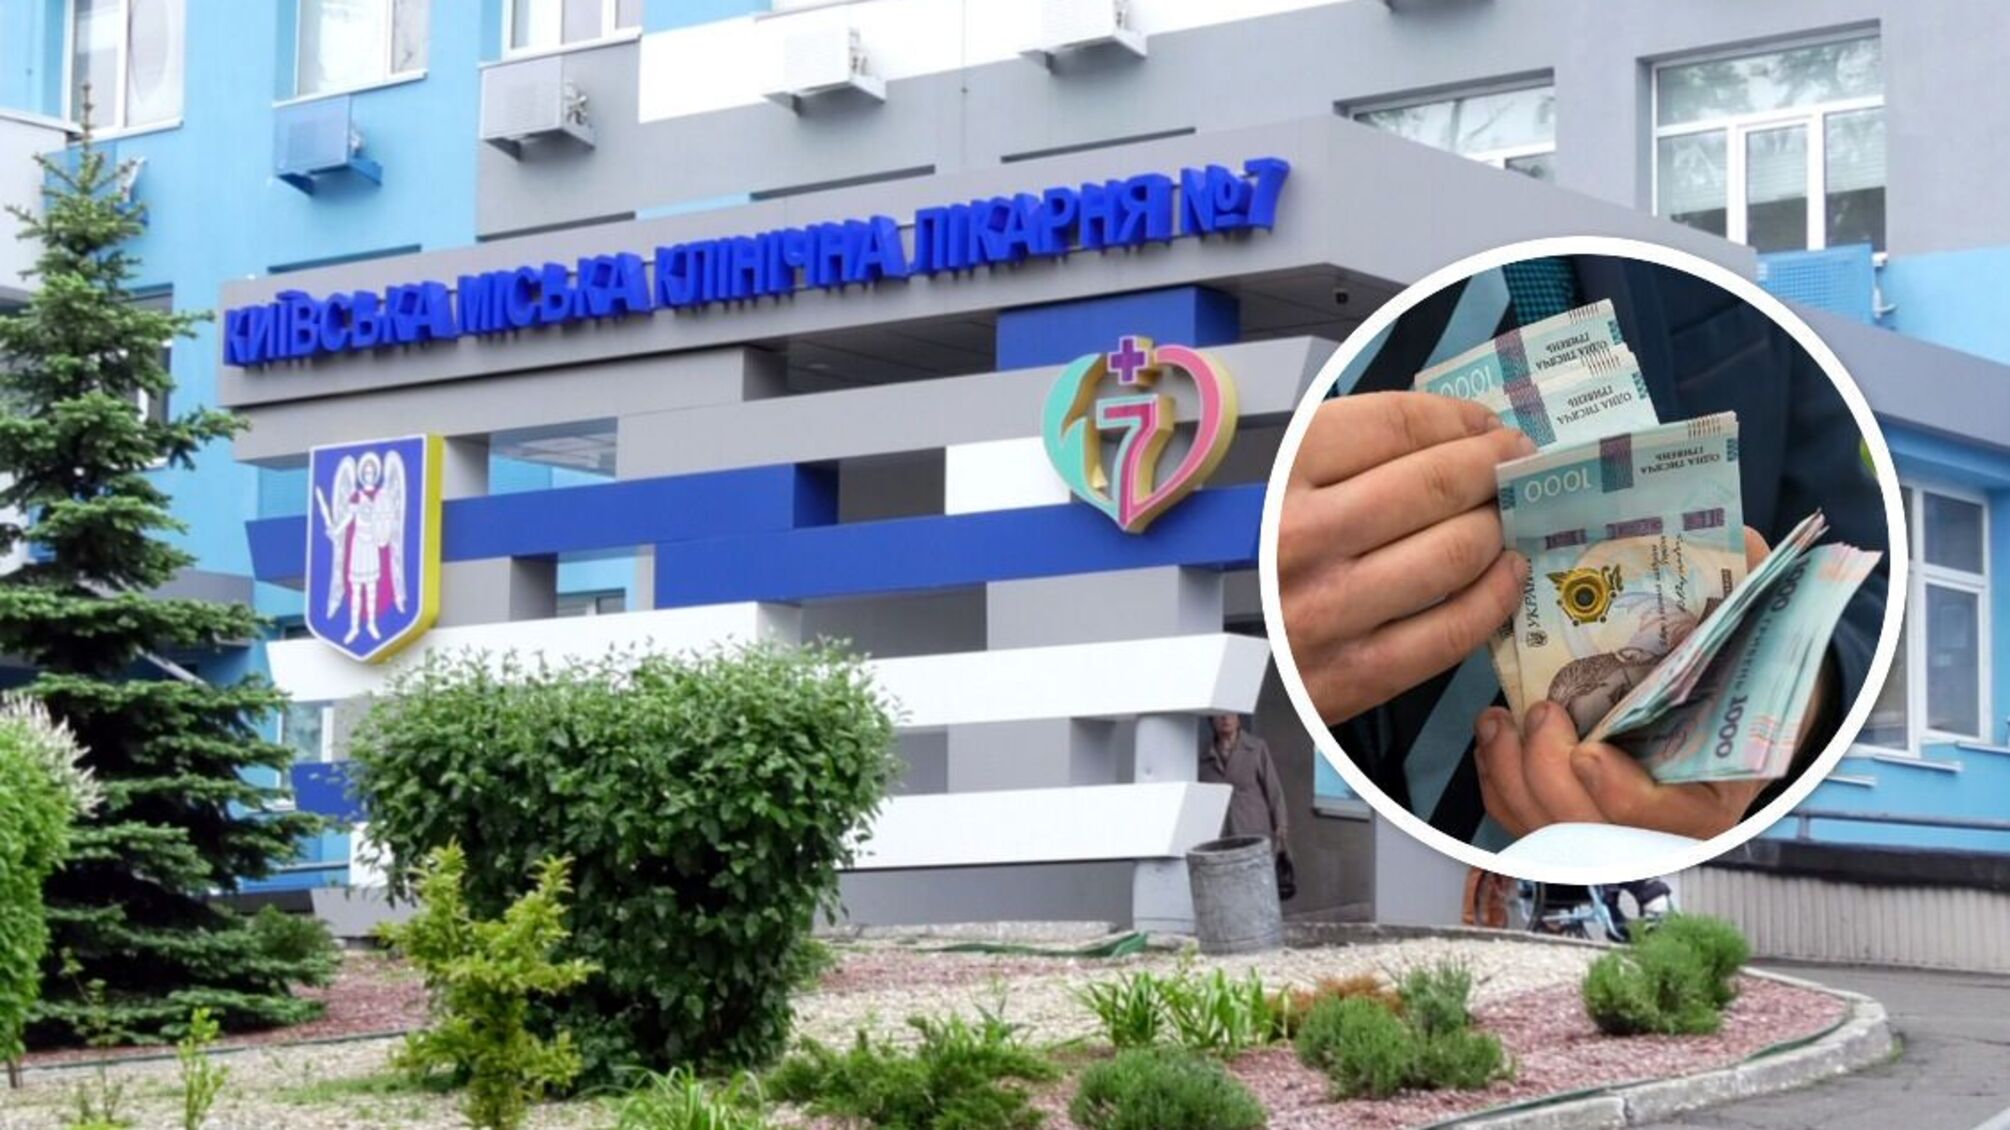 Київська лікарня замовила 'коригування' ремонту на 15 млн фірмі з кримінальним шлейфом: що відомо